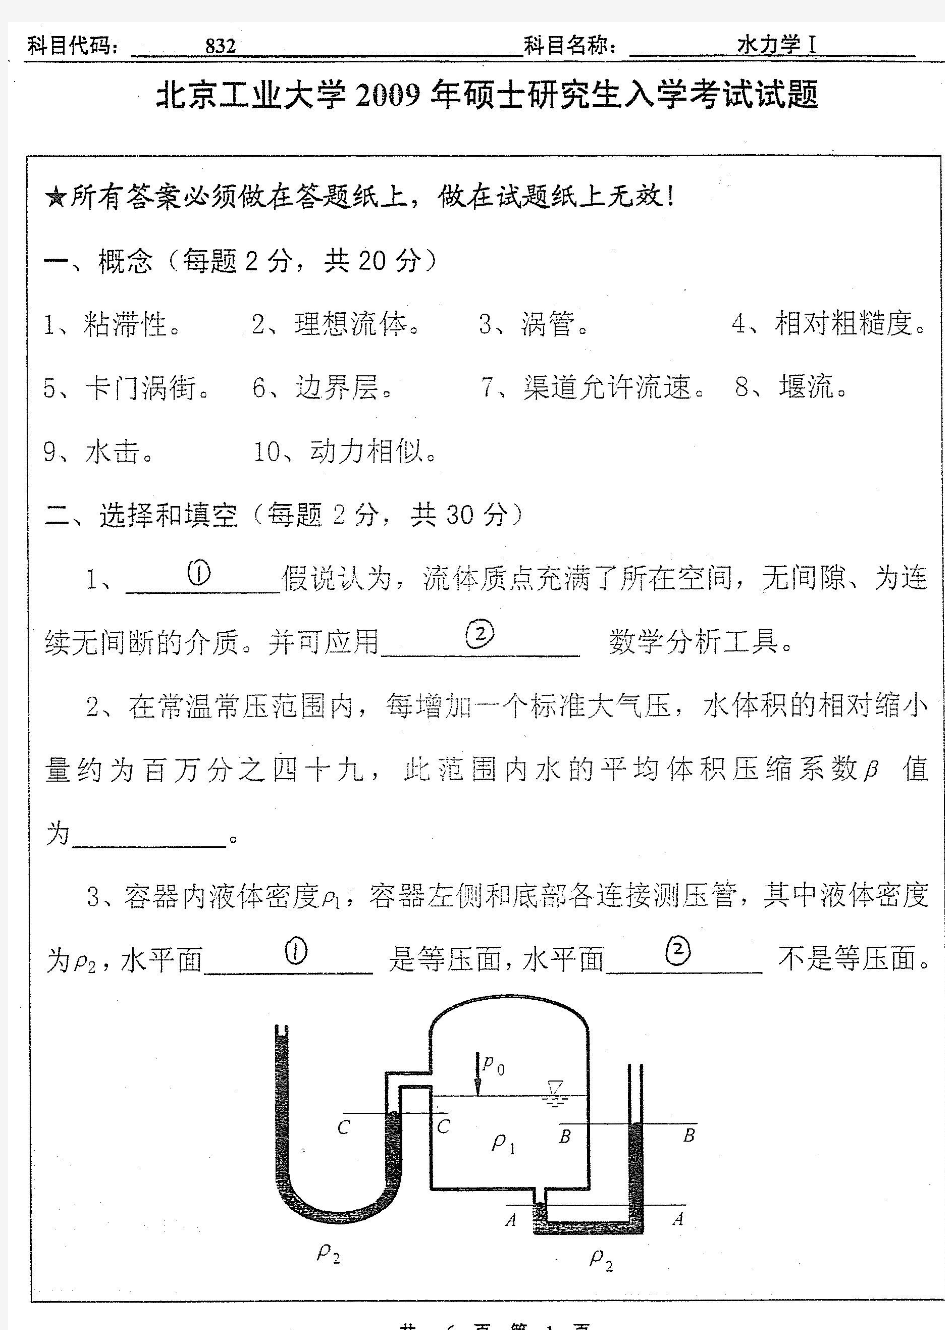 北京工业大学水力学(I)2009年年考研真题考研试题